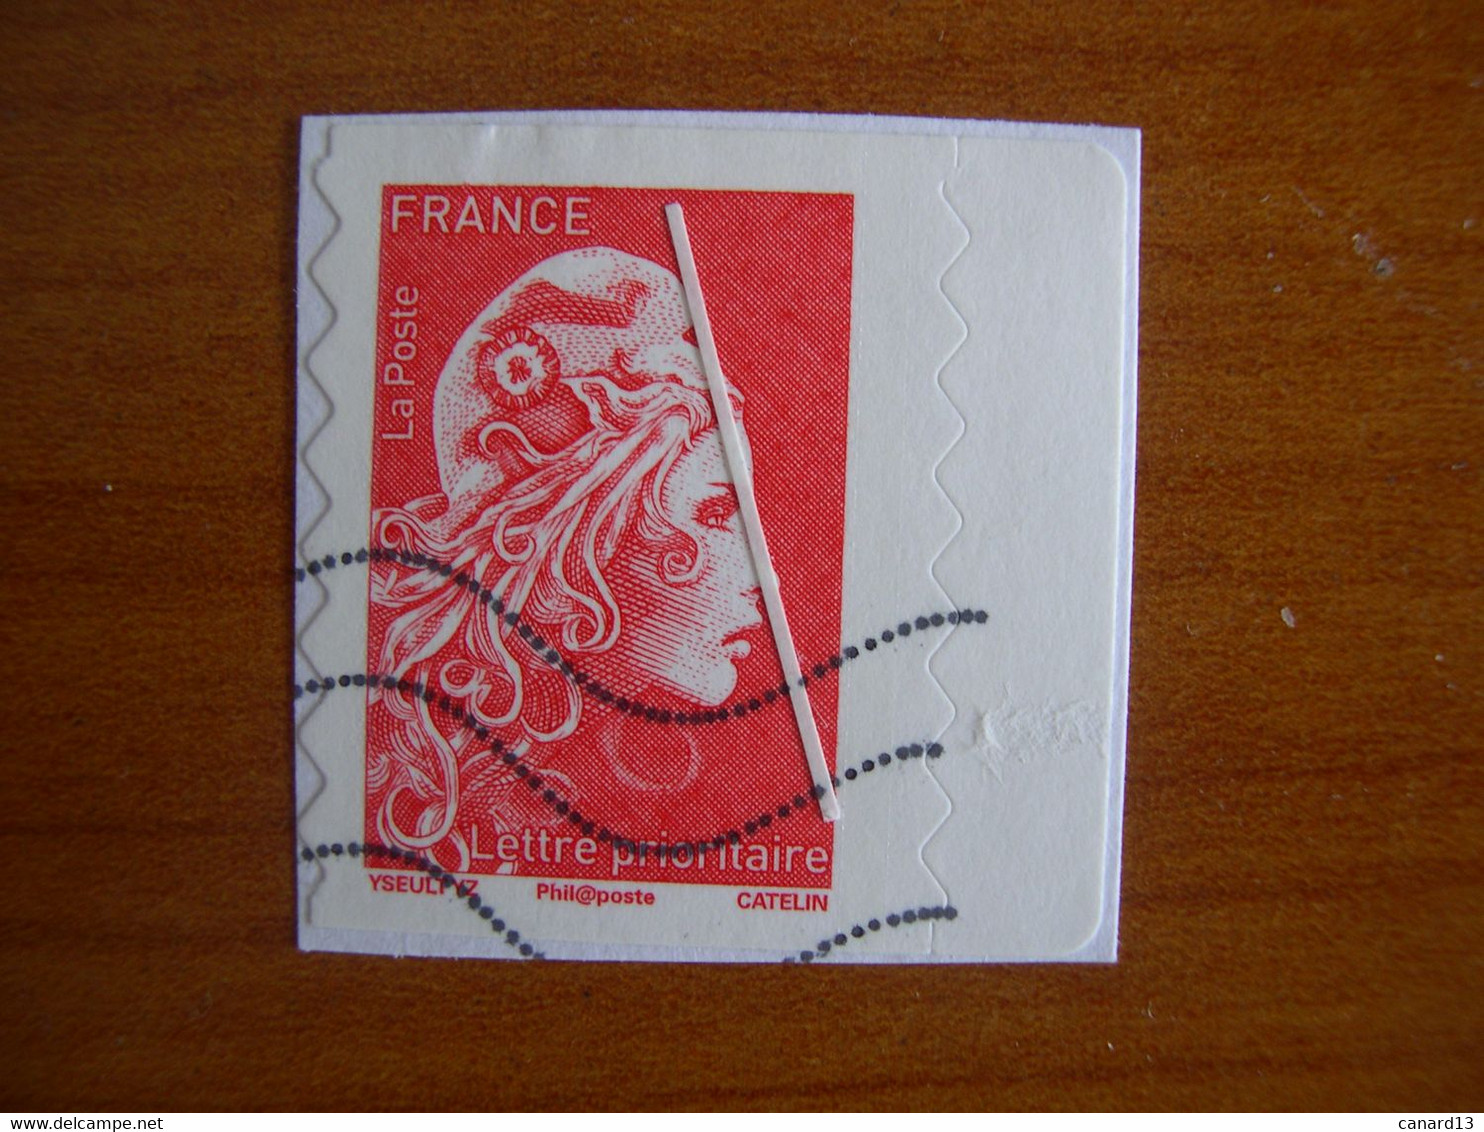 France  Obl   N° 1599 Avec Parasite - Used Stamps